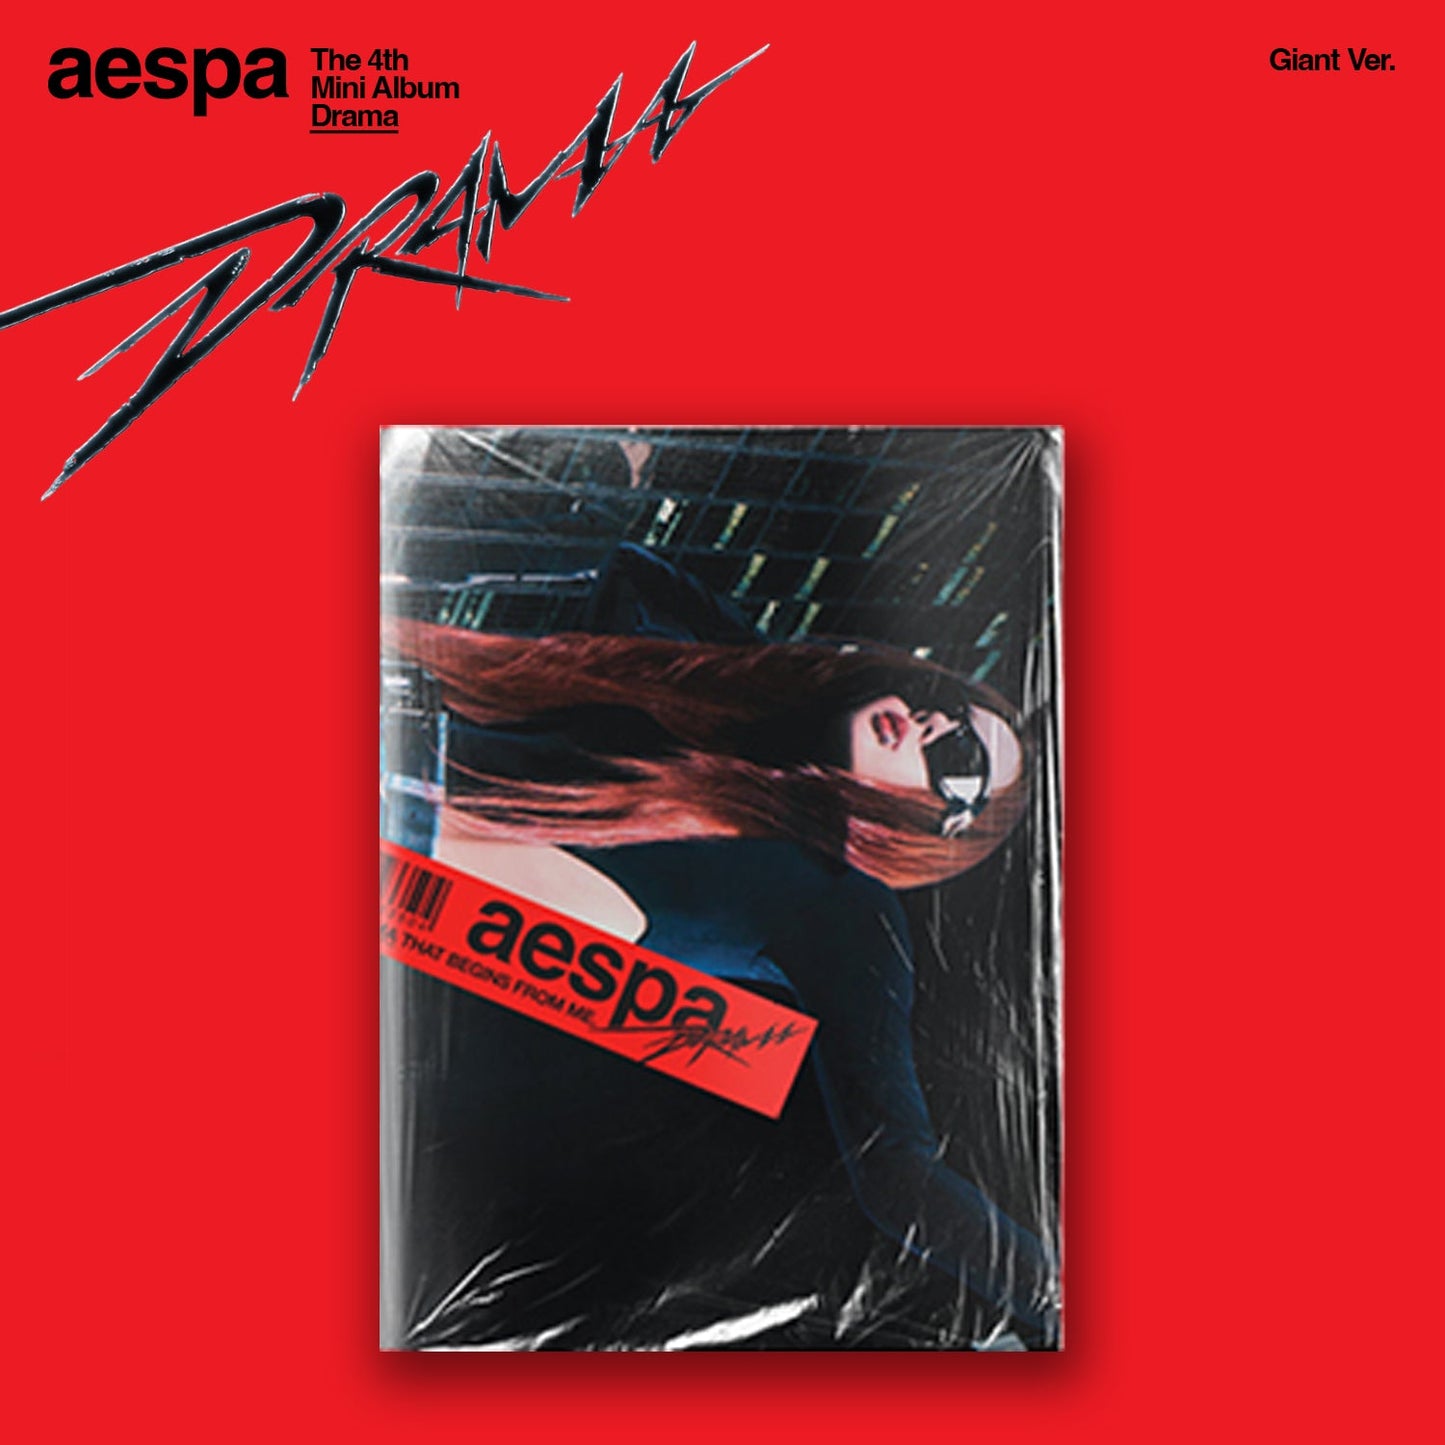 AESPA 4TH MINI ALBUM 'DRAMA' (GIANT) WINTER VERSION COVER